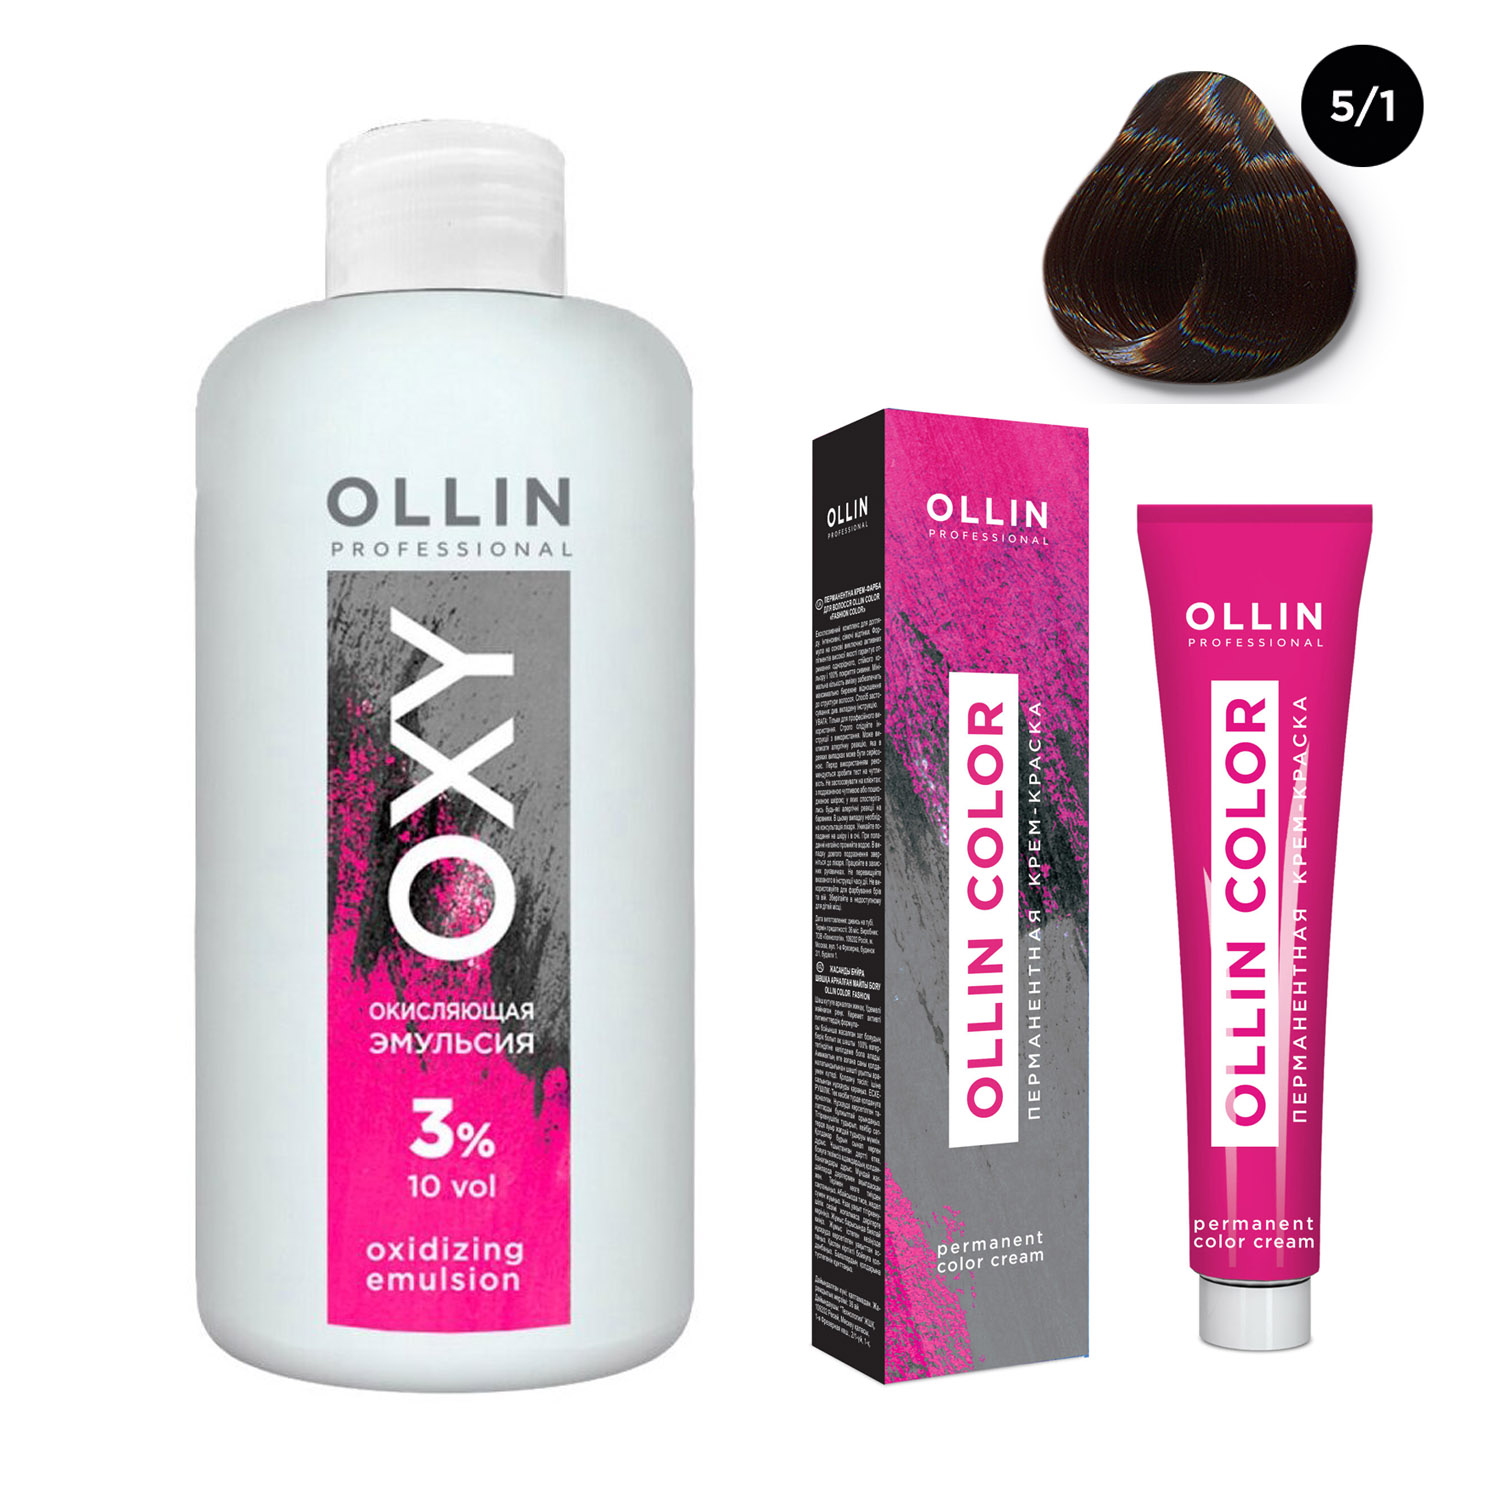 Ollin Professional Набор Перманентная крем-краска для волос Ollin Color оттенок 5/1 светлый шатен пепельный 100 мл + Окисляющая эмульсия Oxy 3% 150 мл (Ollin Professional, Ollin Color)